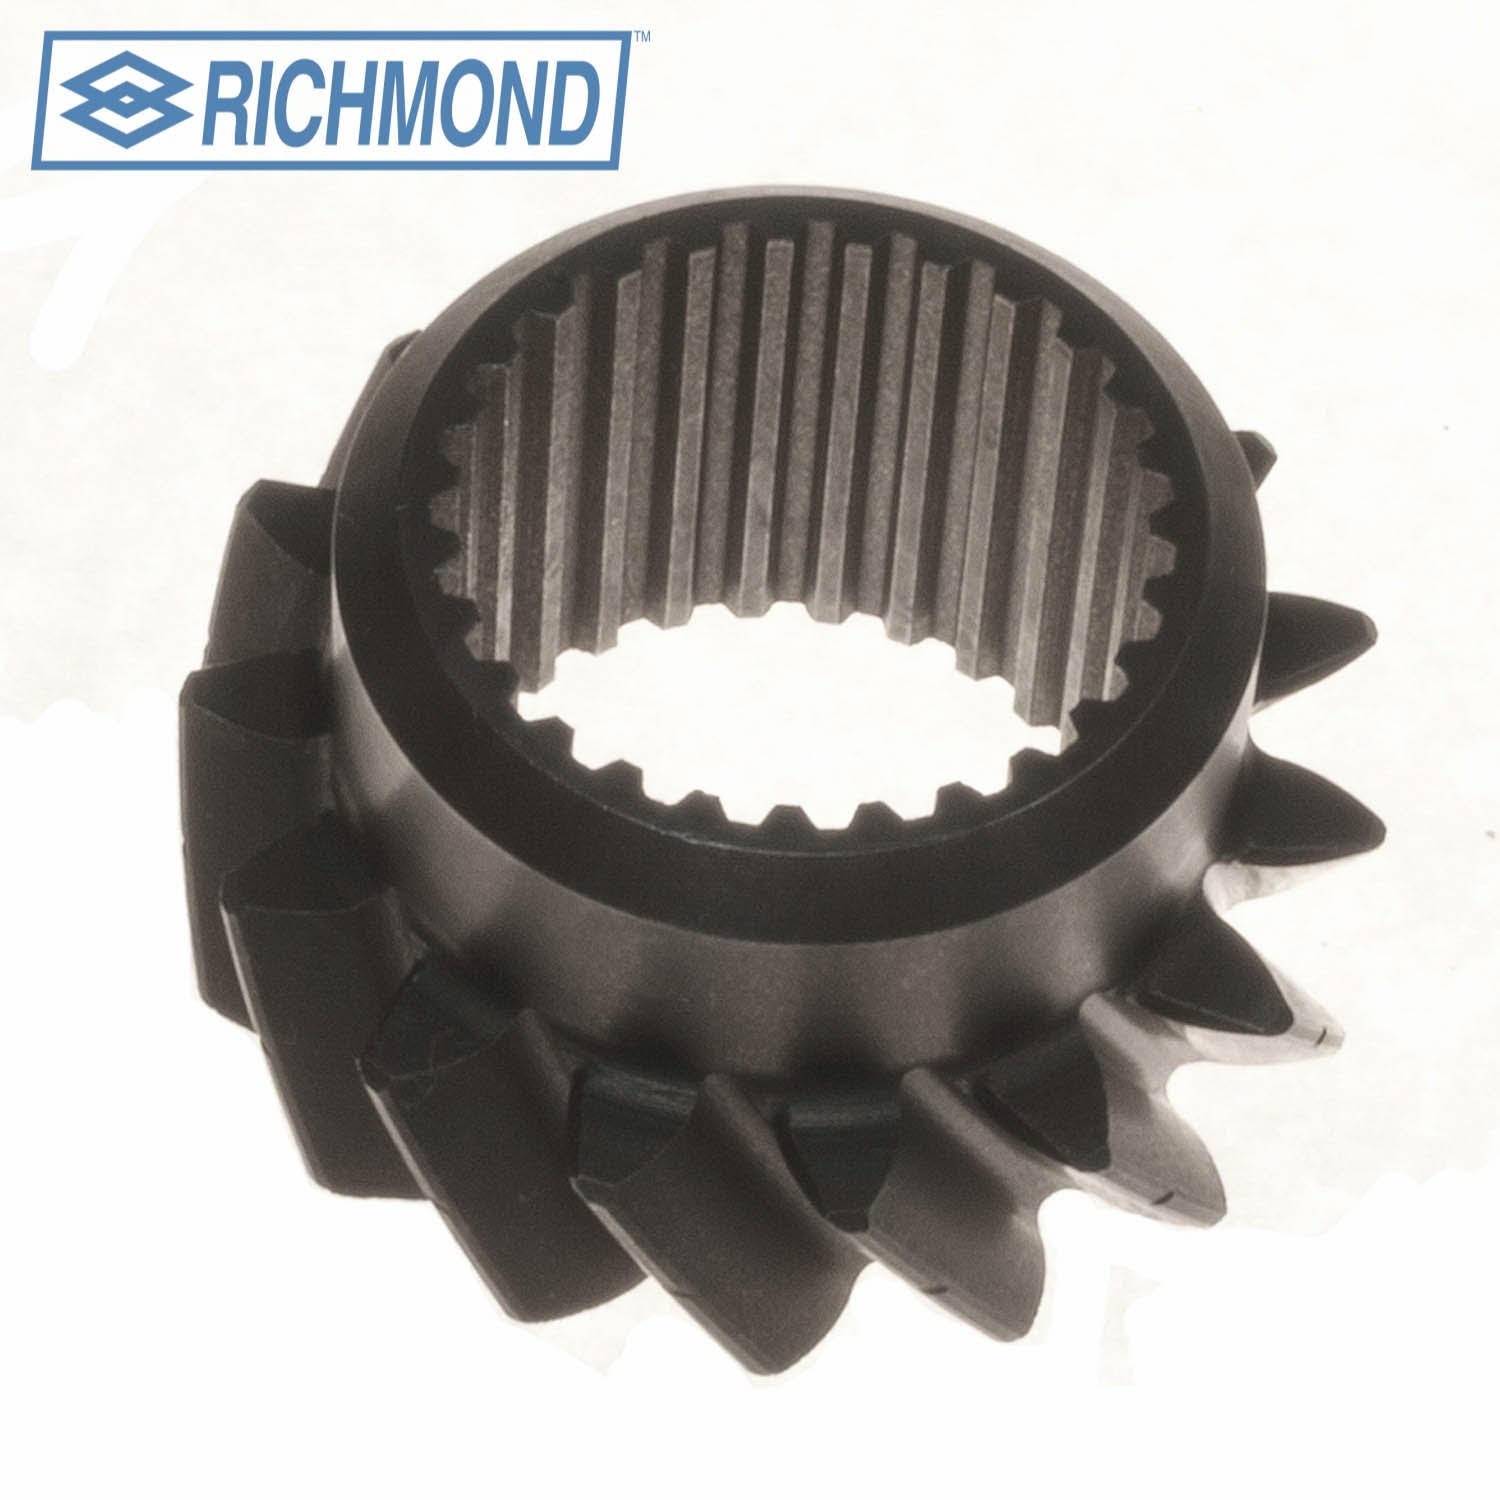 Richmond 1304084004 Front Rev Idler Gear 15T (Z)